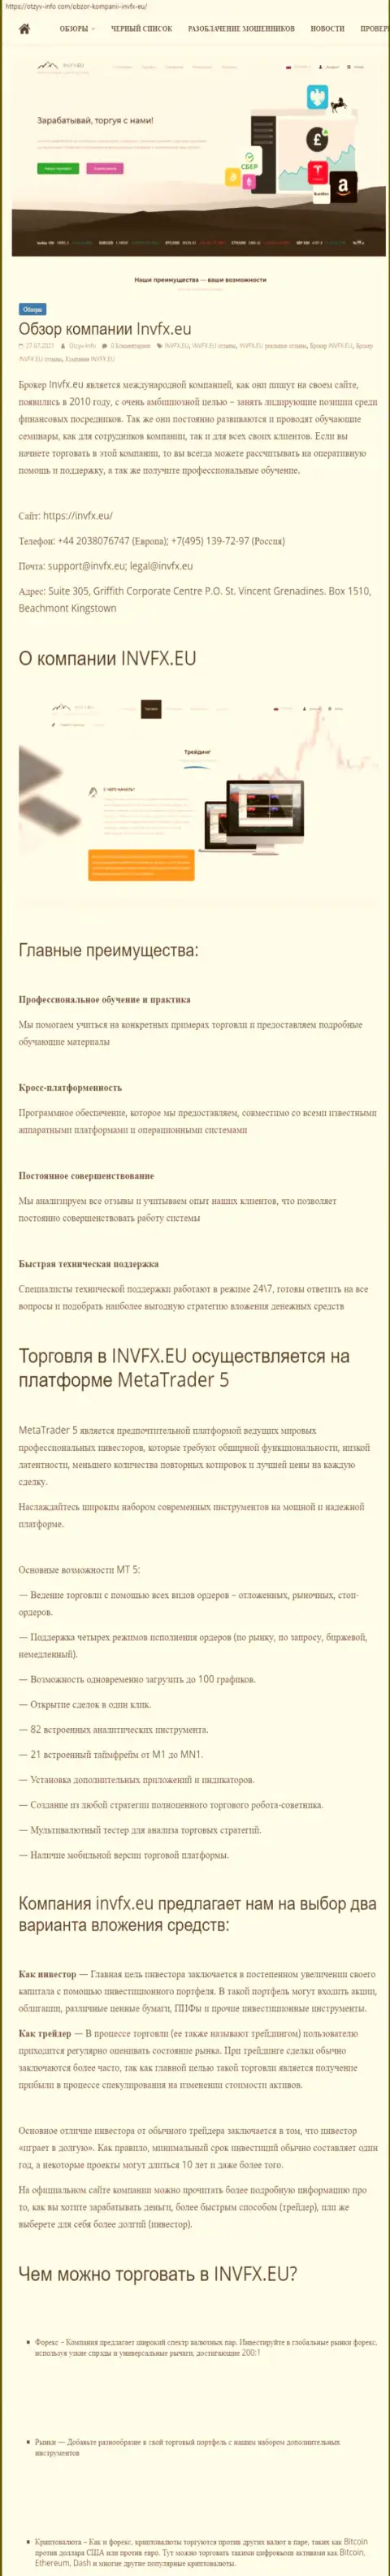 Сайт otzyv info com опубликовал статью о форекс-брокерской организации INVFX Eu